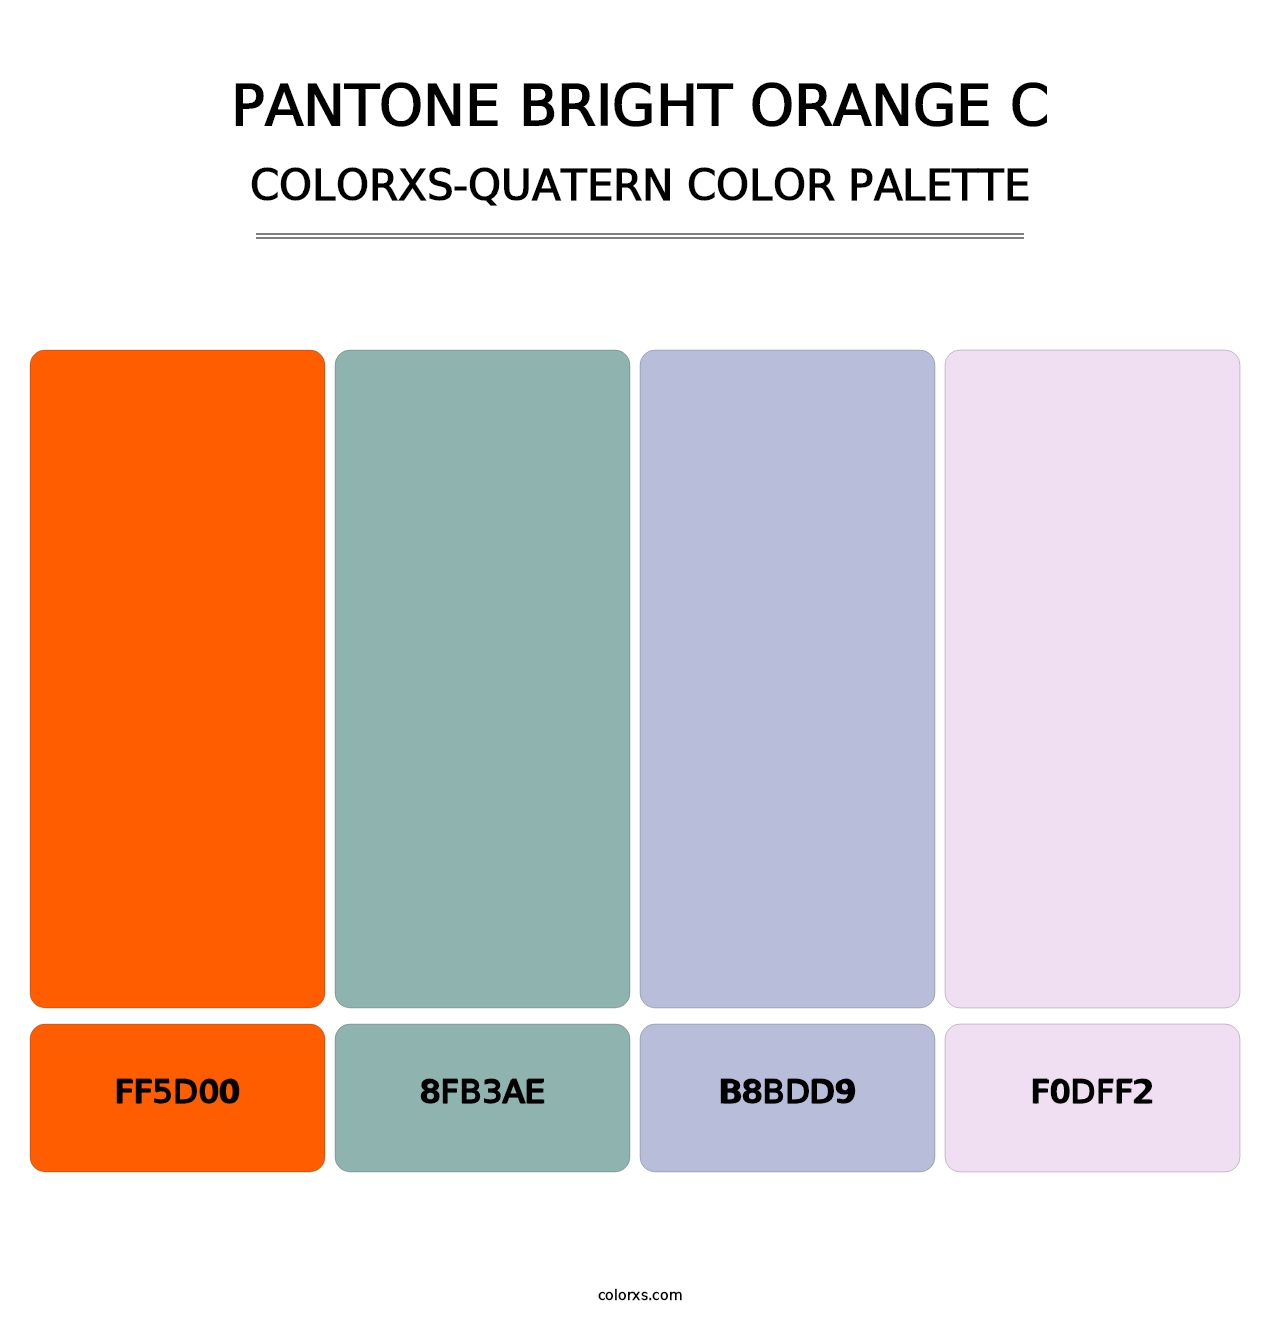 PANTONE Bright Orange C - Colorxs Quatern Palette